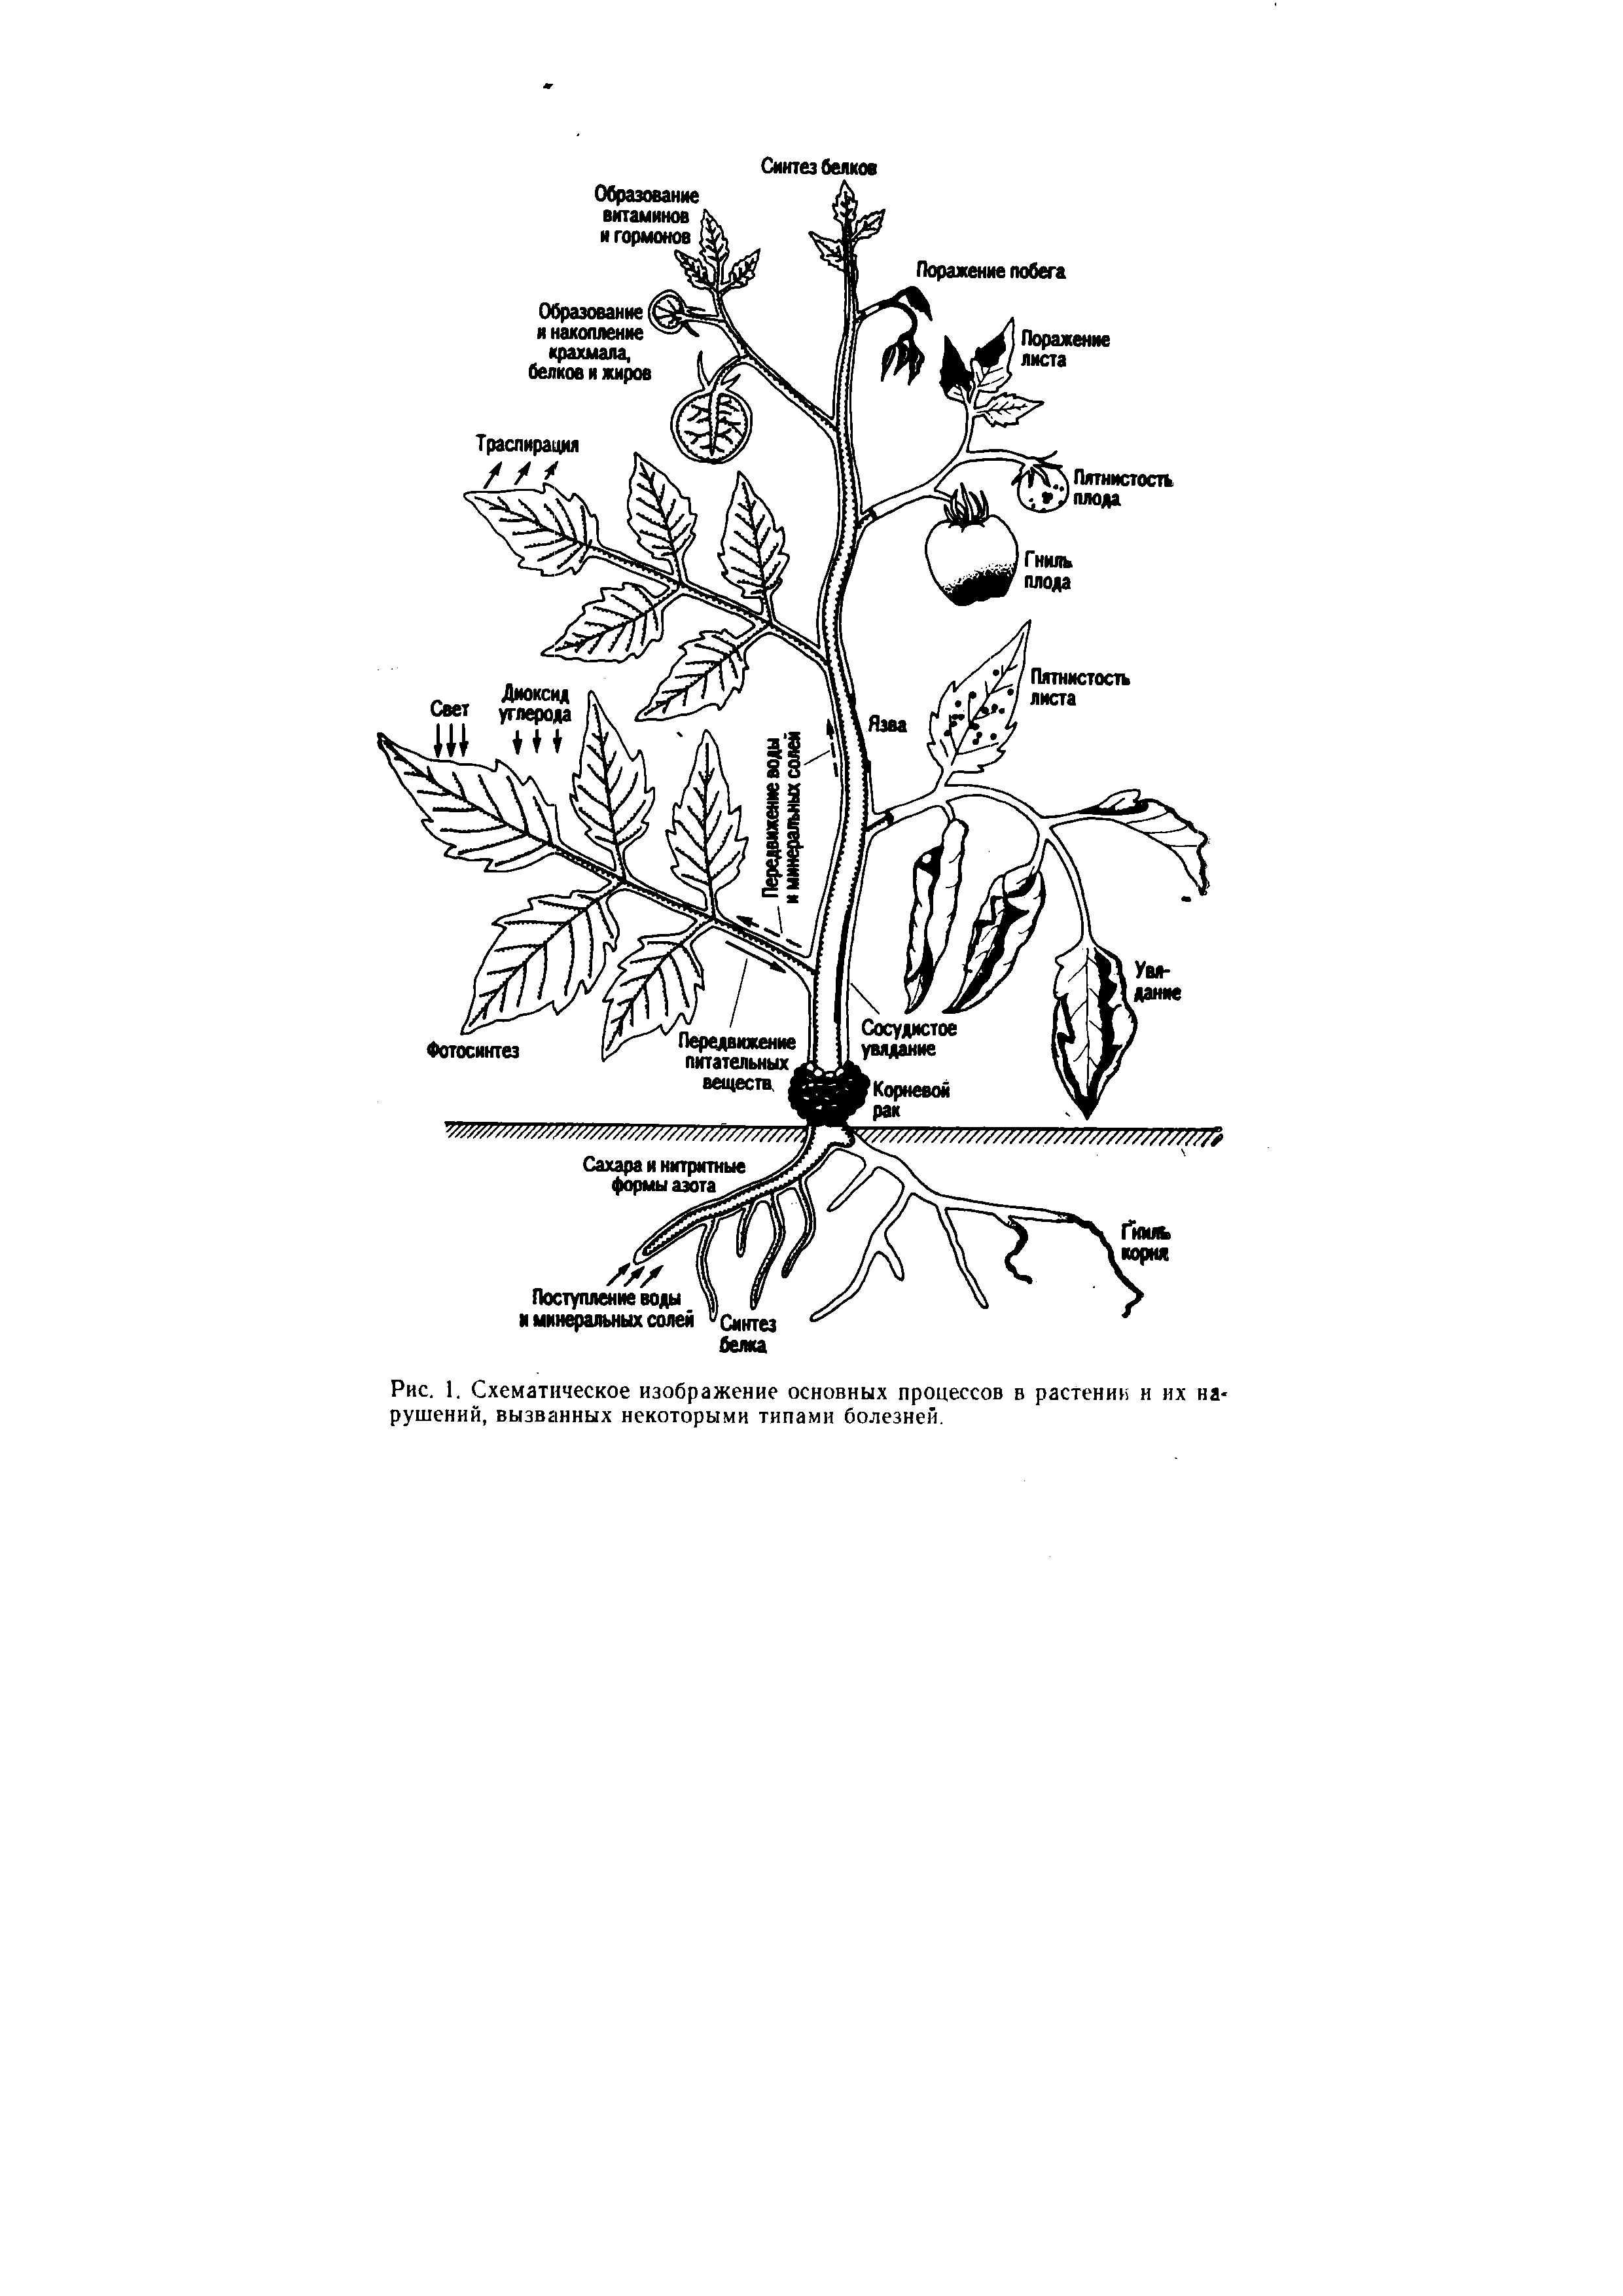 Рис. 1. Схематическое изображение основных процессов в растении н их нарушений, вызванных некоторыми типами болезней.